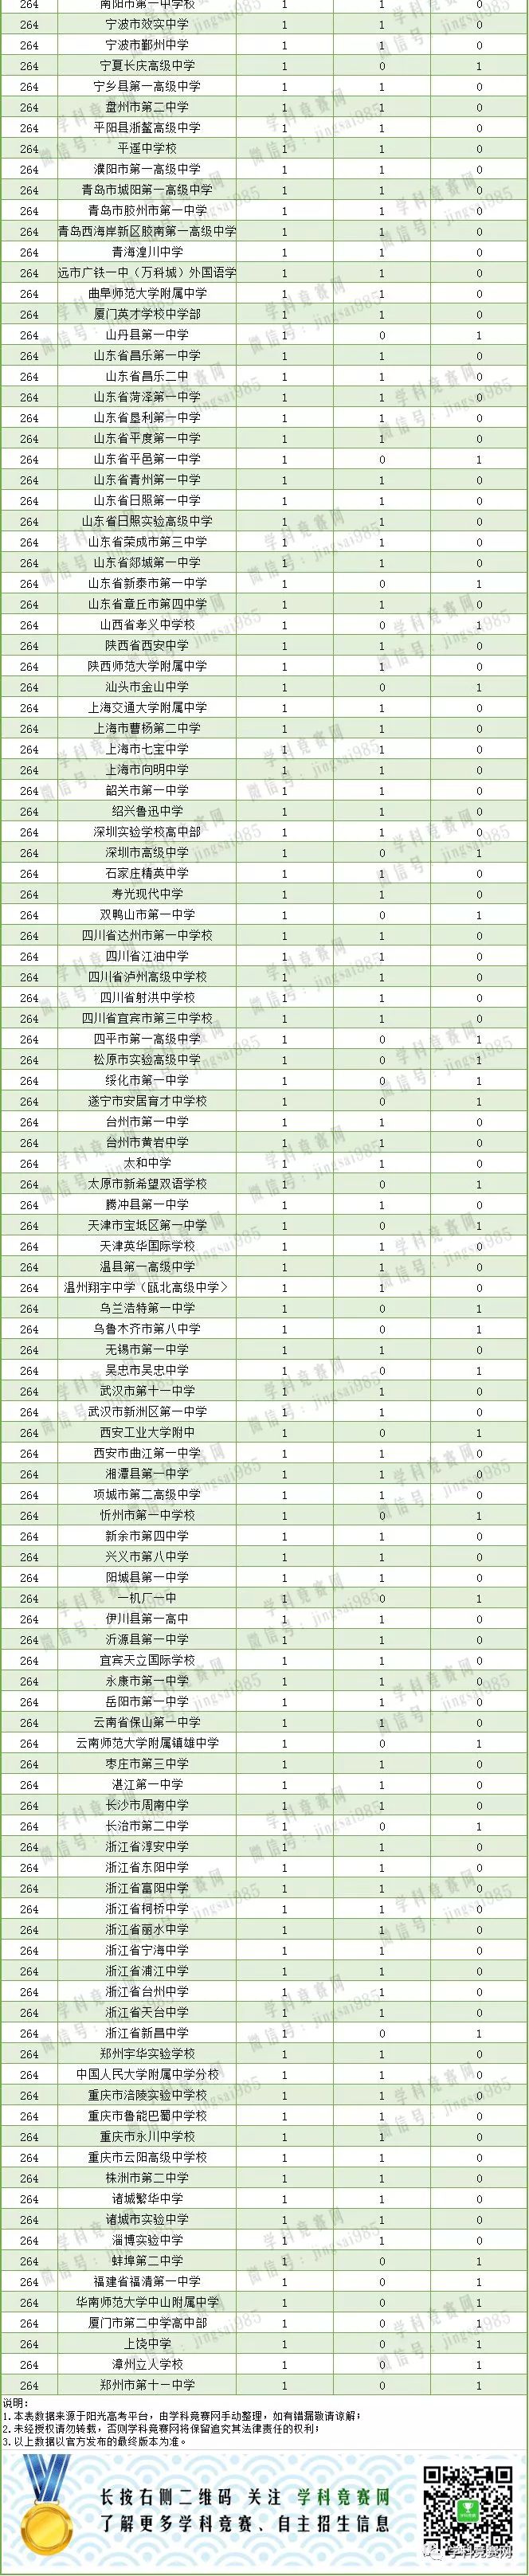 涪陵高中排行榜_中学知识:2018年涪陵五中全国排名第152名重庆排名第5名